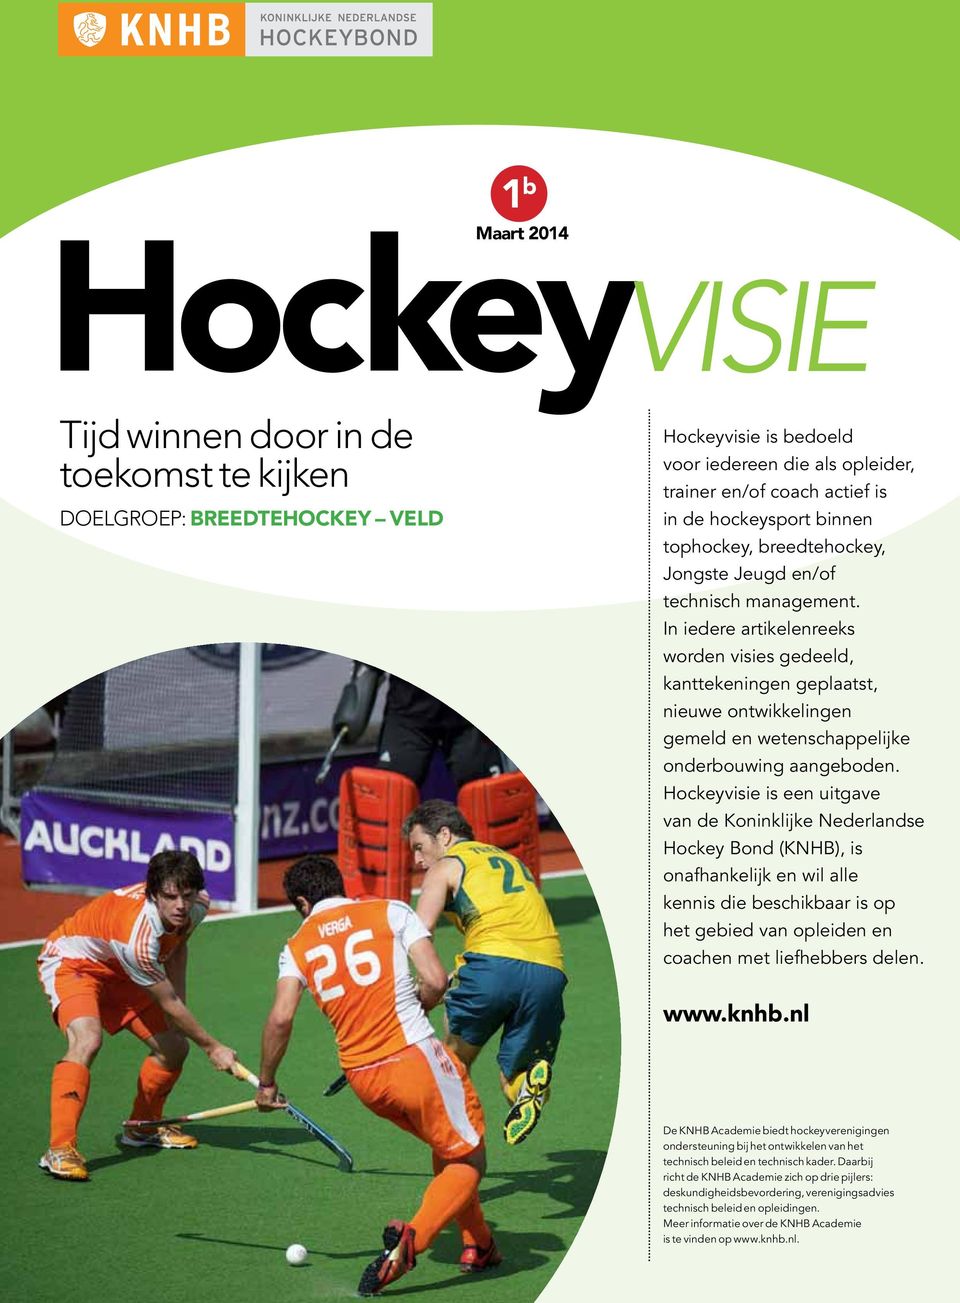 is een uitgave van de Koninklijke Nederlandse Hockey Bond (KNHB), is onafhankelijk en wil alle kennis die beschikbaar is op het gebied van opleiden en coachen met liefhebbers delen. www.knhb.